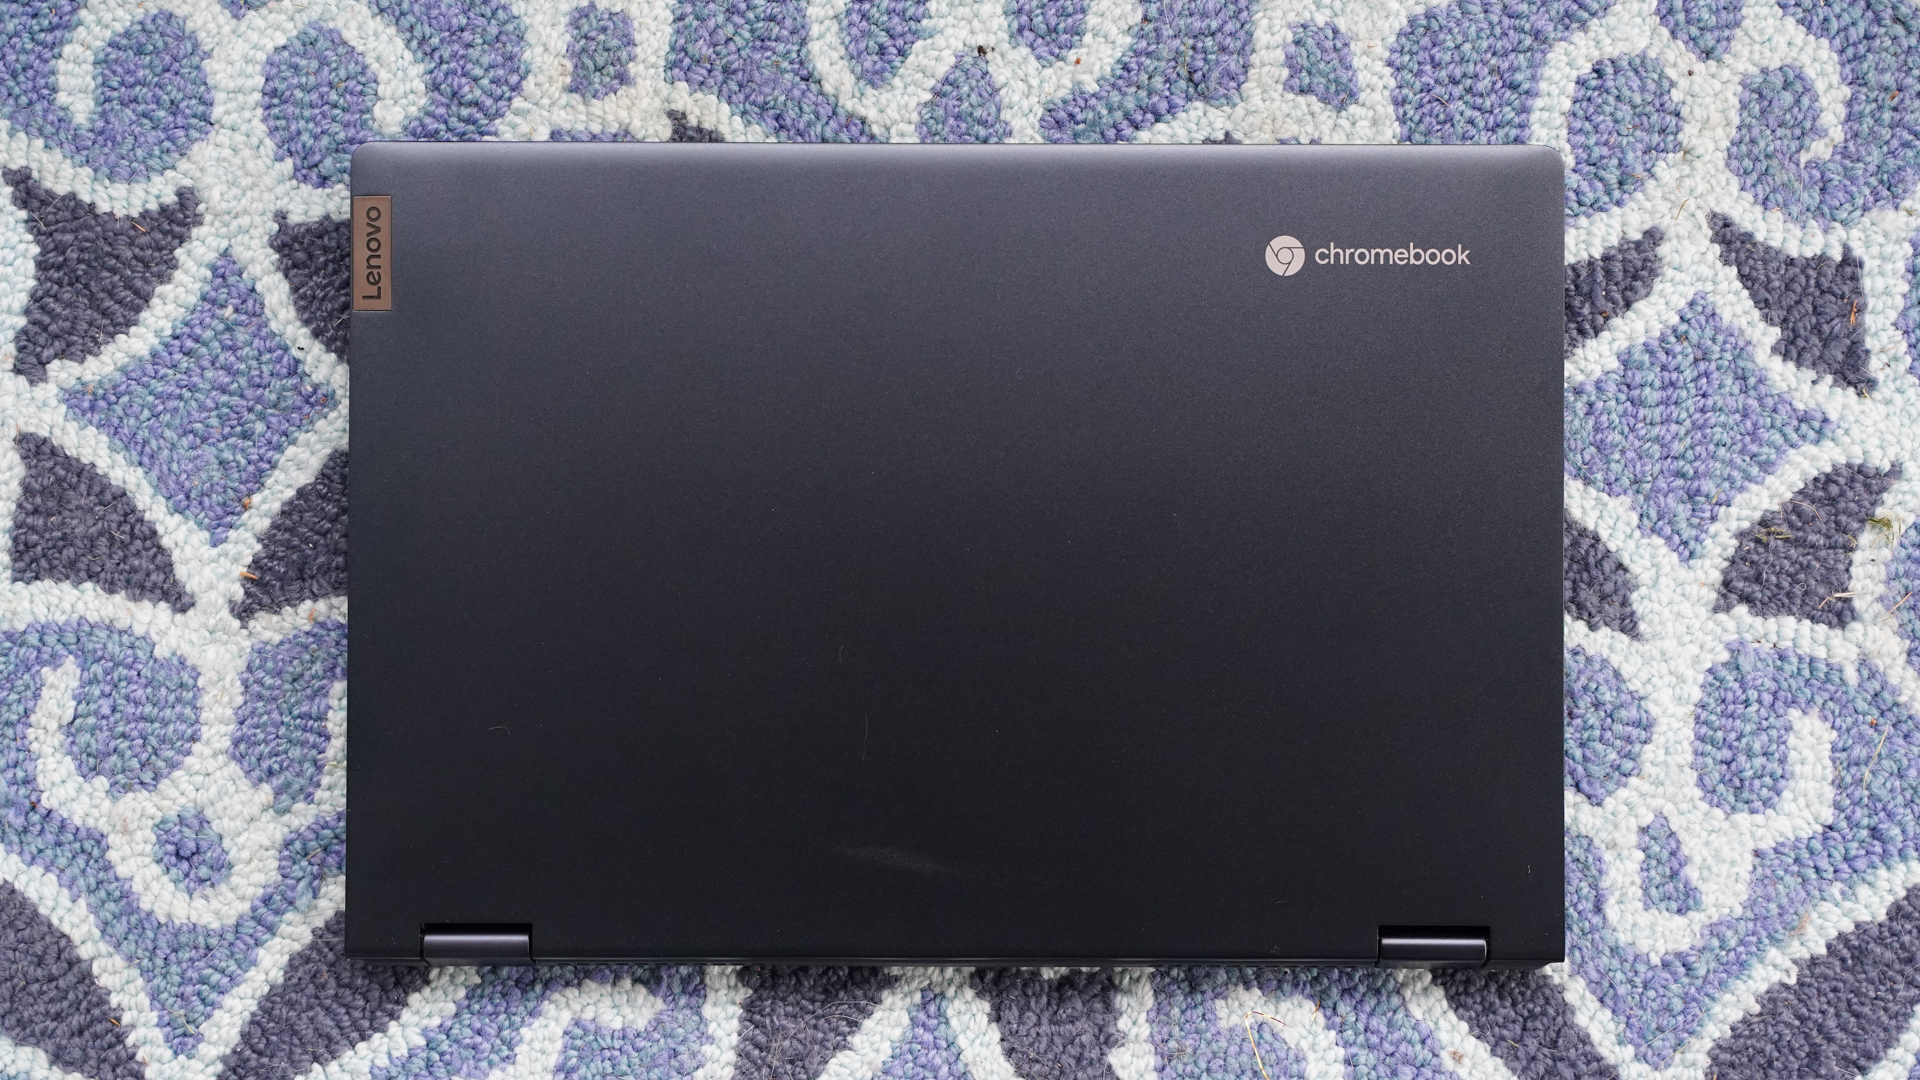 Lenovo flex 5i chromebook top surface